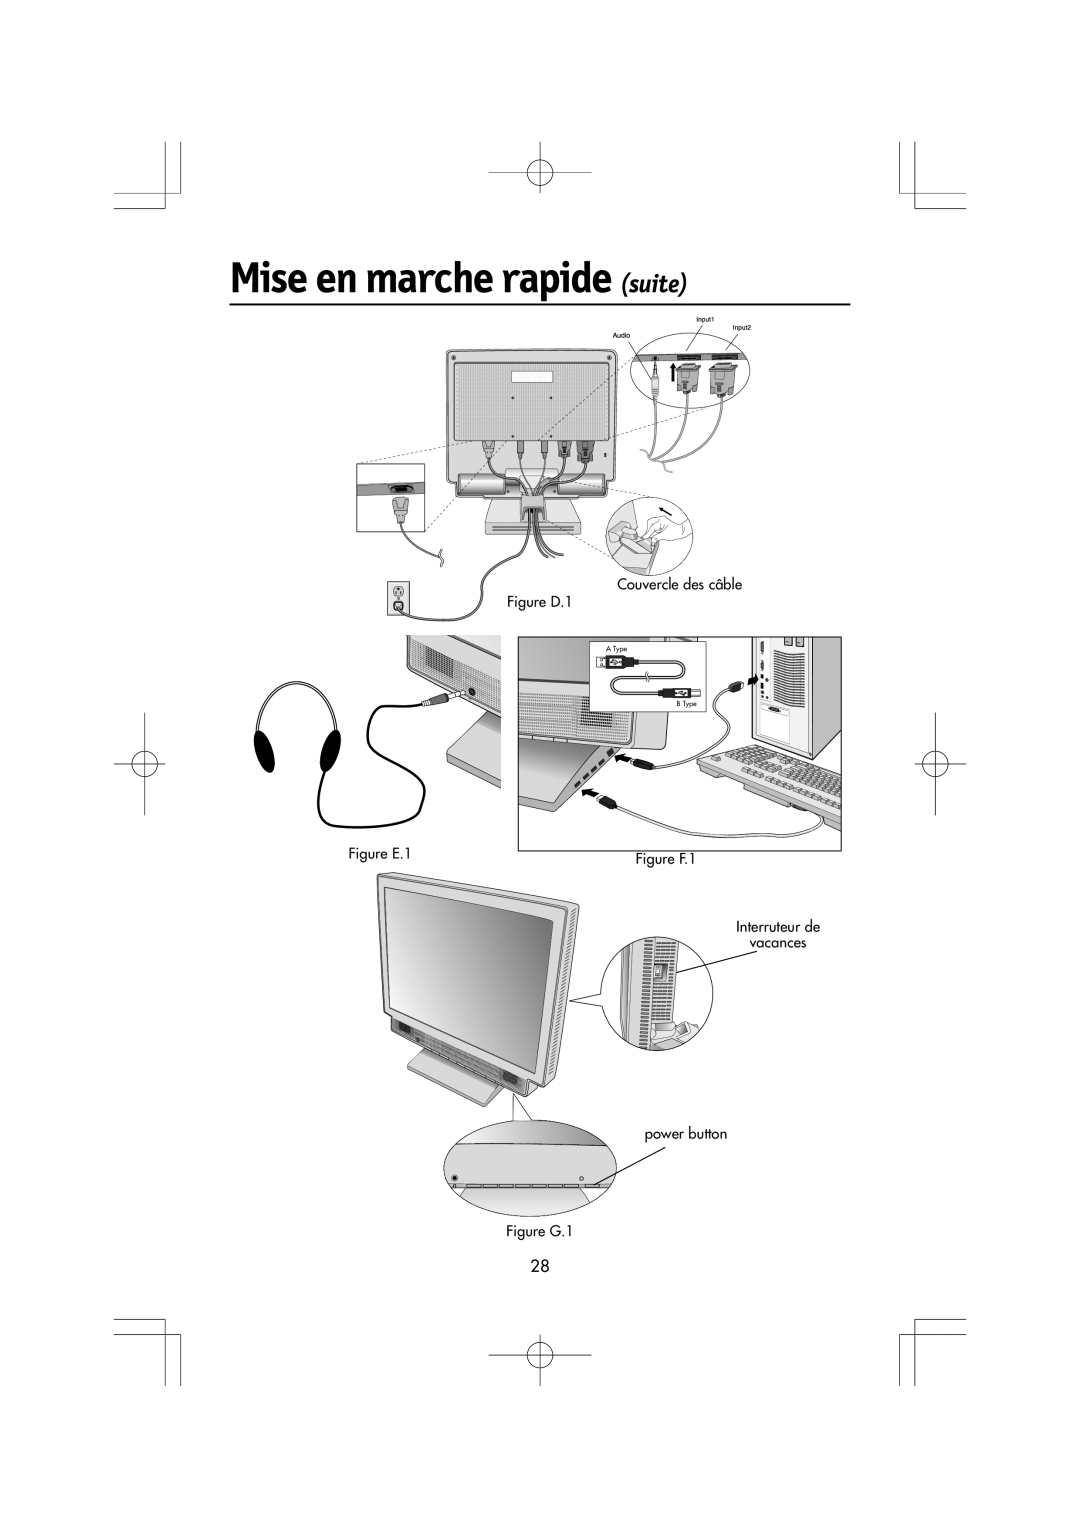 Mitsubishi Electronics LCD1560M manual Mise en marche rapide suite, Couvercle des câble, Figure D.1, Figure E.1, Figure F.1 